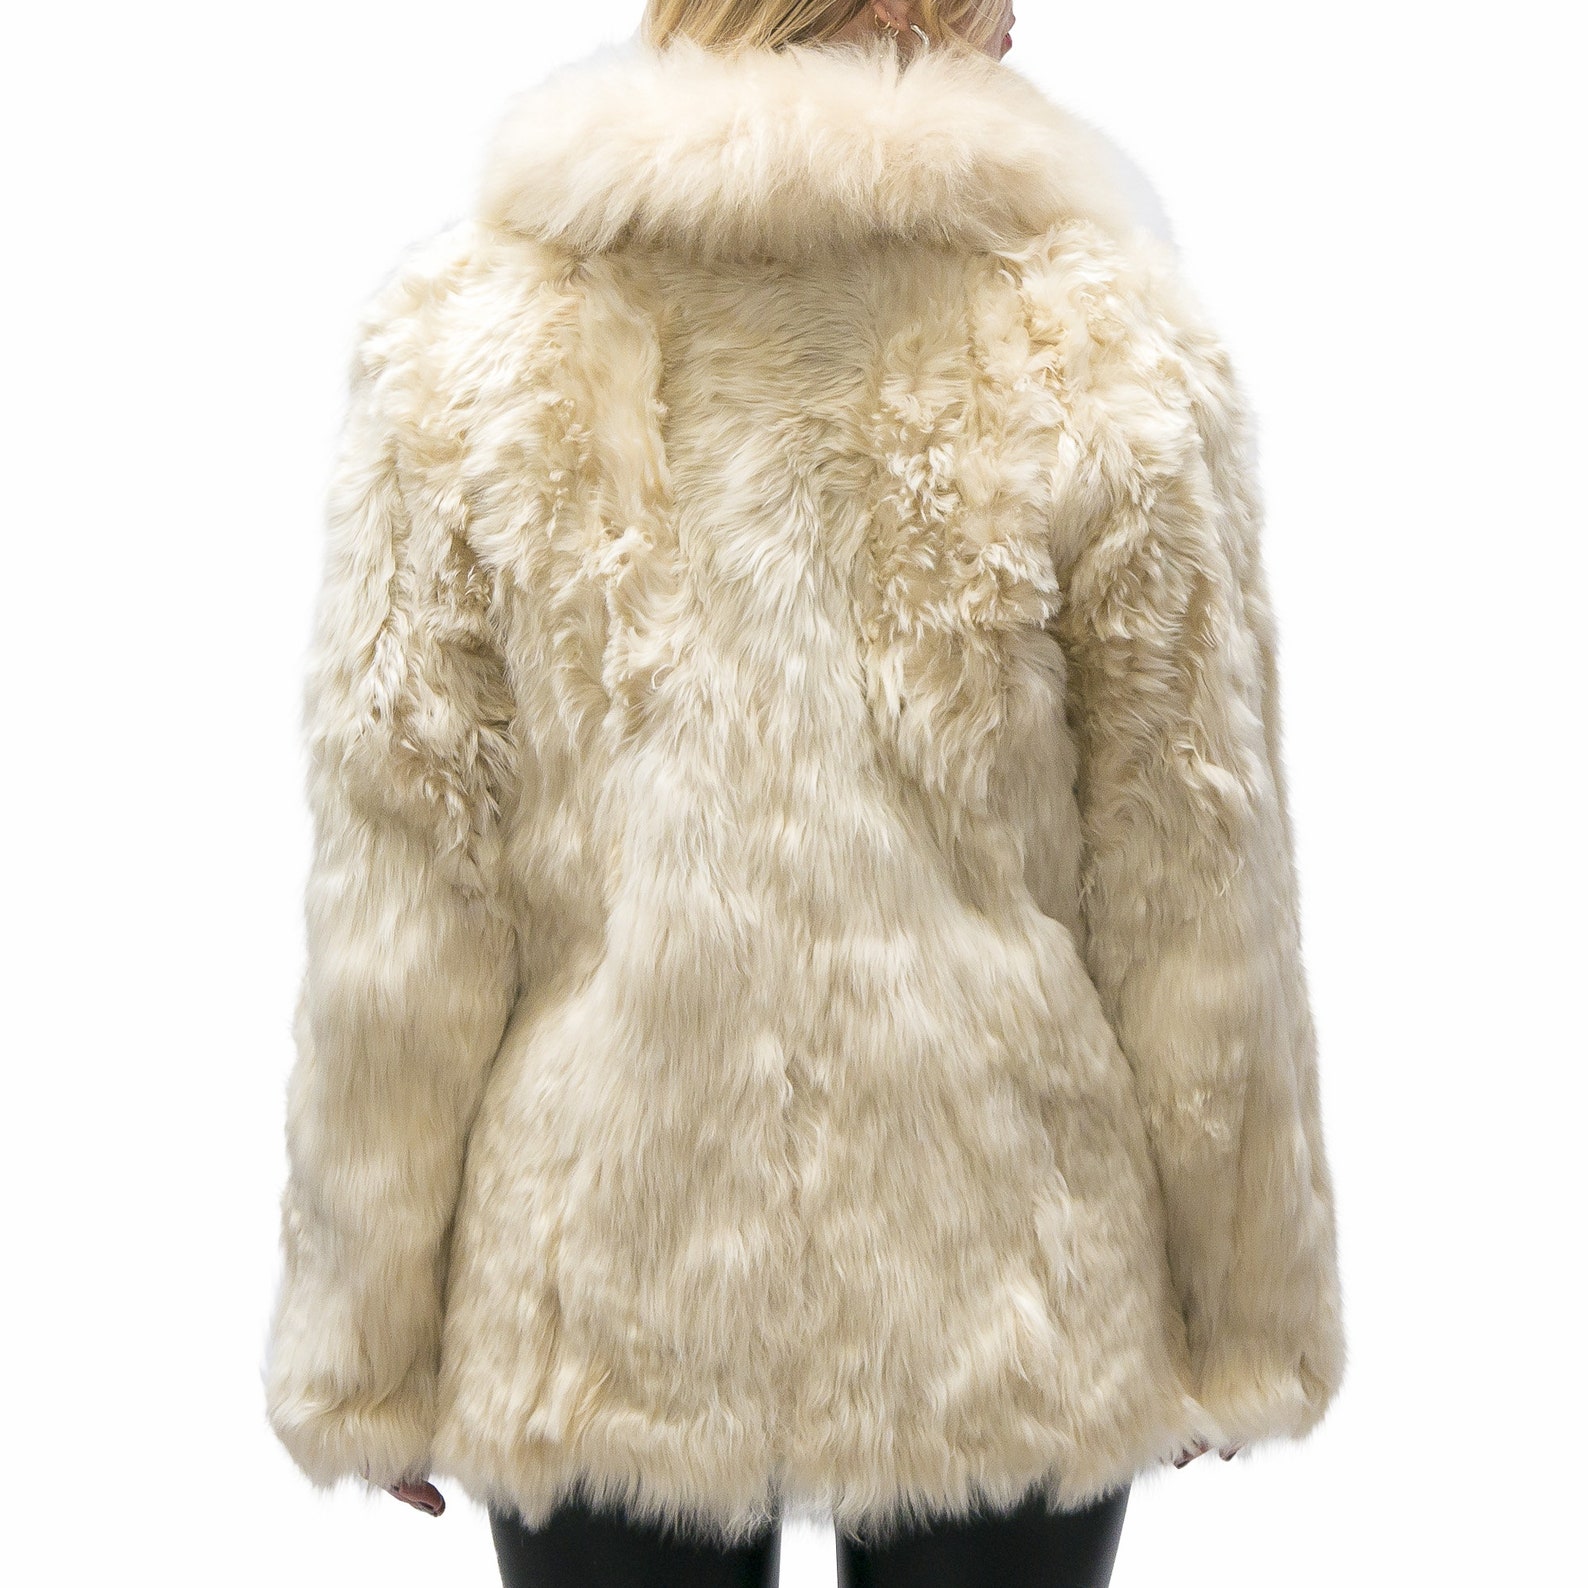 Beige 100% Handmade Alpaca Fur Coat Jacket Elegant Genuine | Etsy